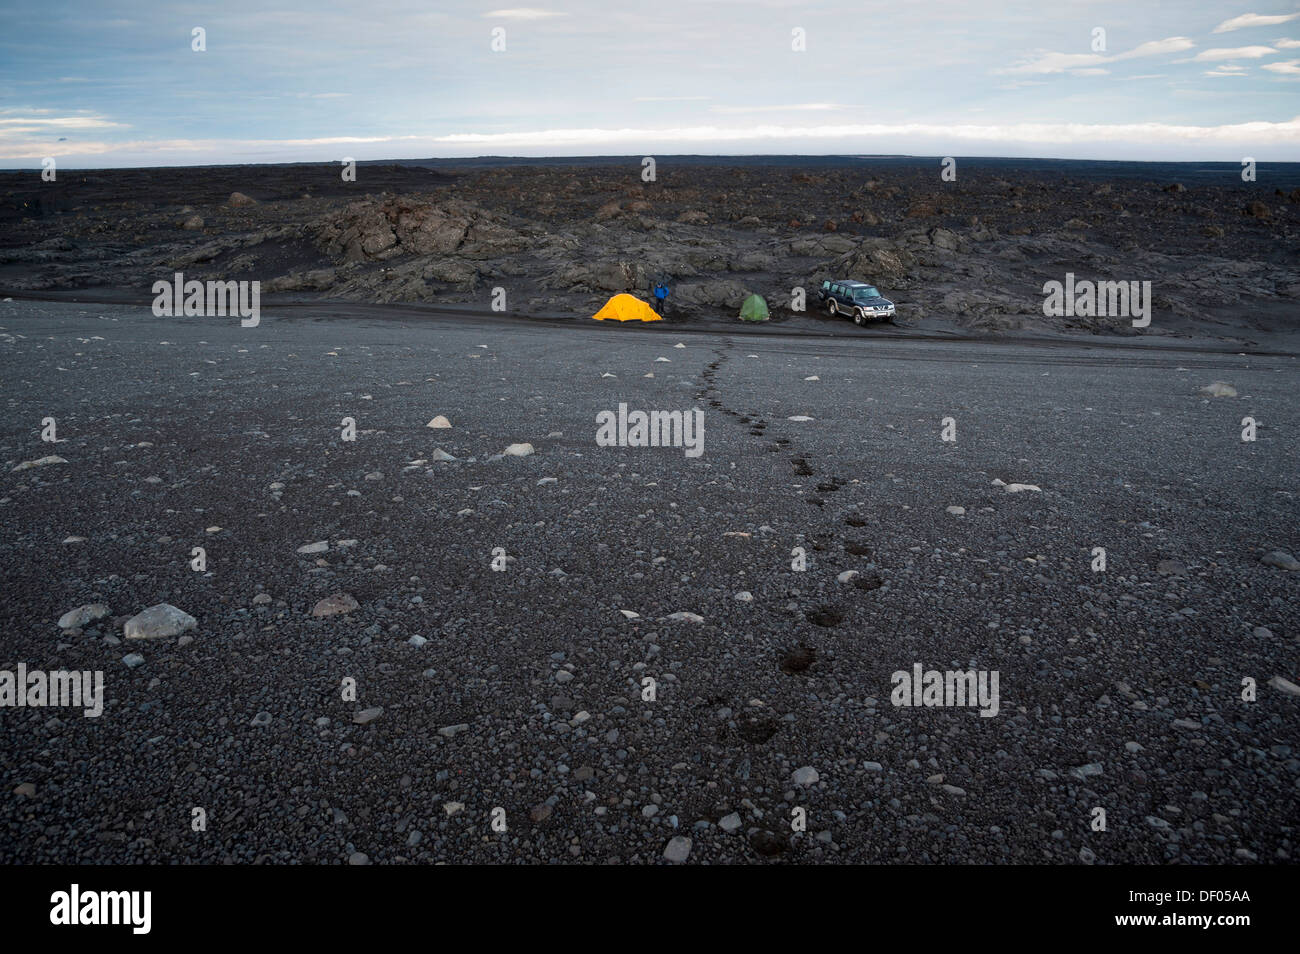 Tende e jeep, camping in campi di lava, altopiani, Islanda, Europa Foto Stock